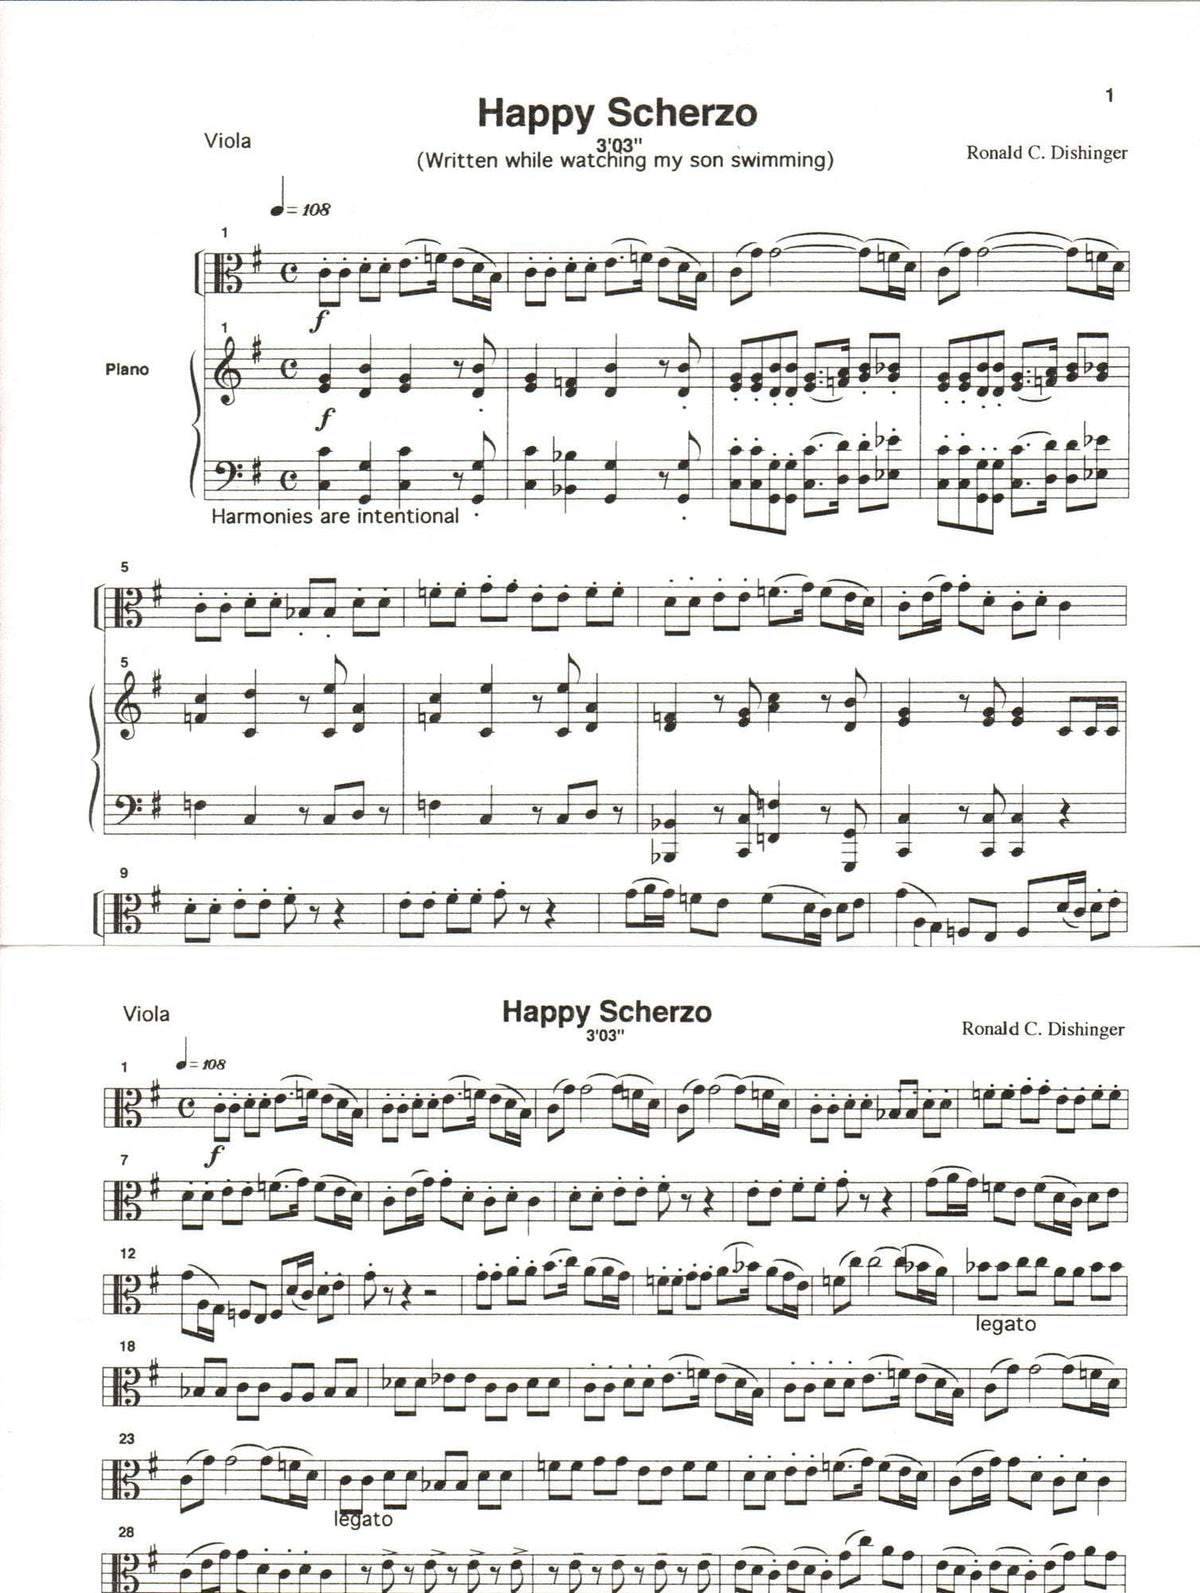 Dishinger, Ronald - Happy Scherzo - for Viola and Piano - Medici Music Press